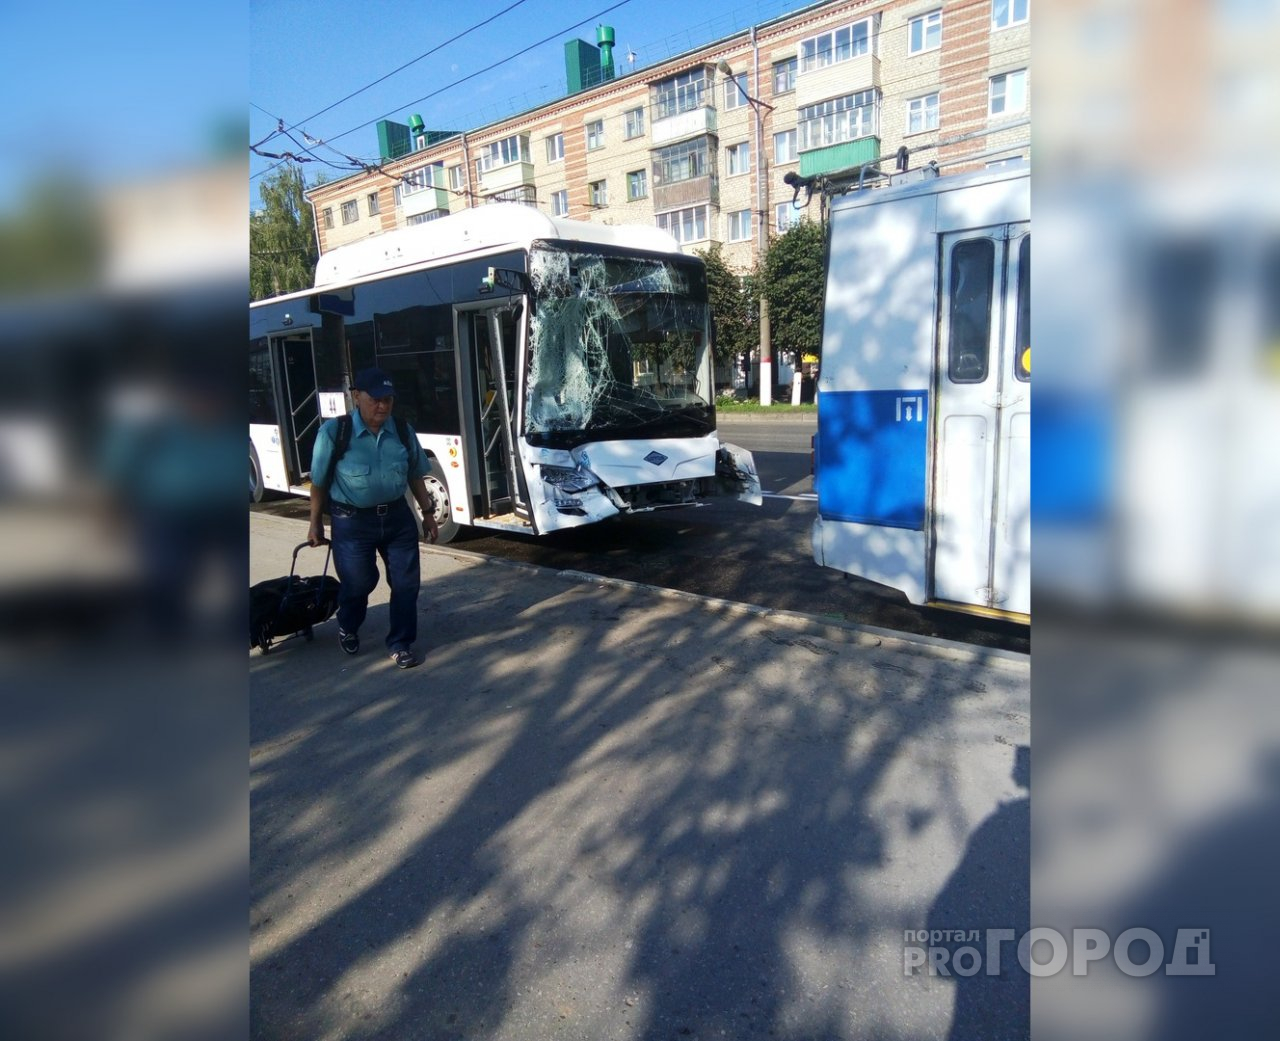 В Чебоксарах четыре человека пострадали в ДТП с автобусом и троллейбусом